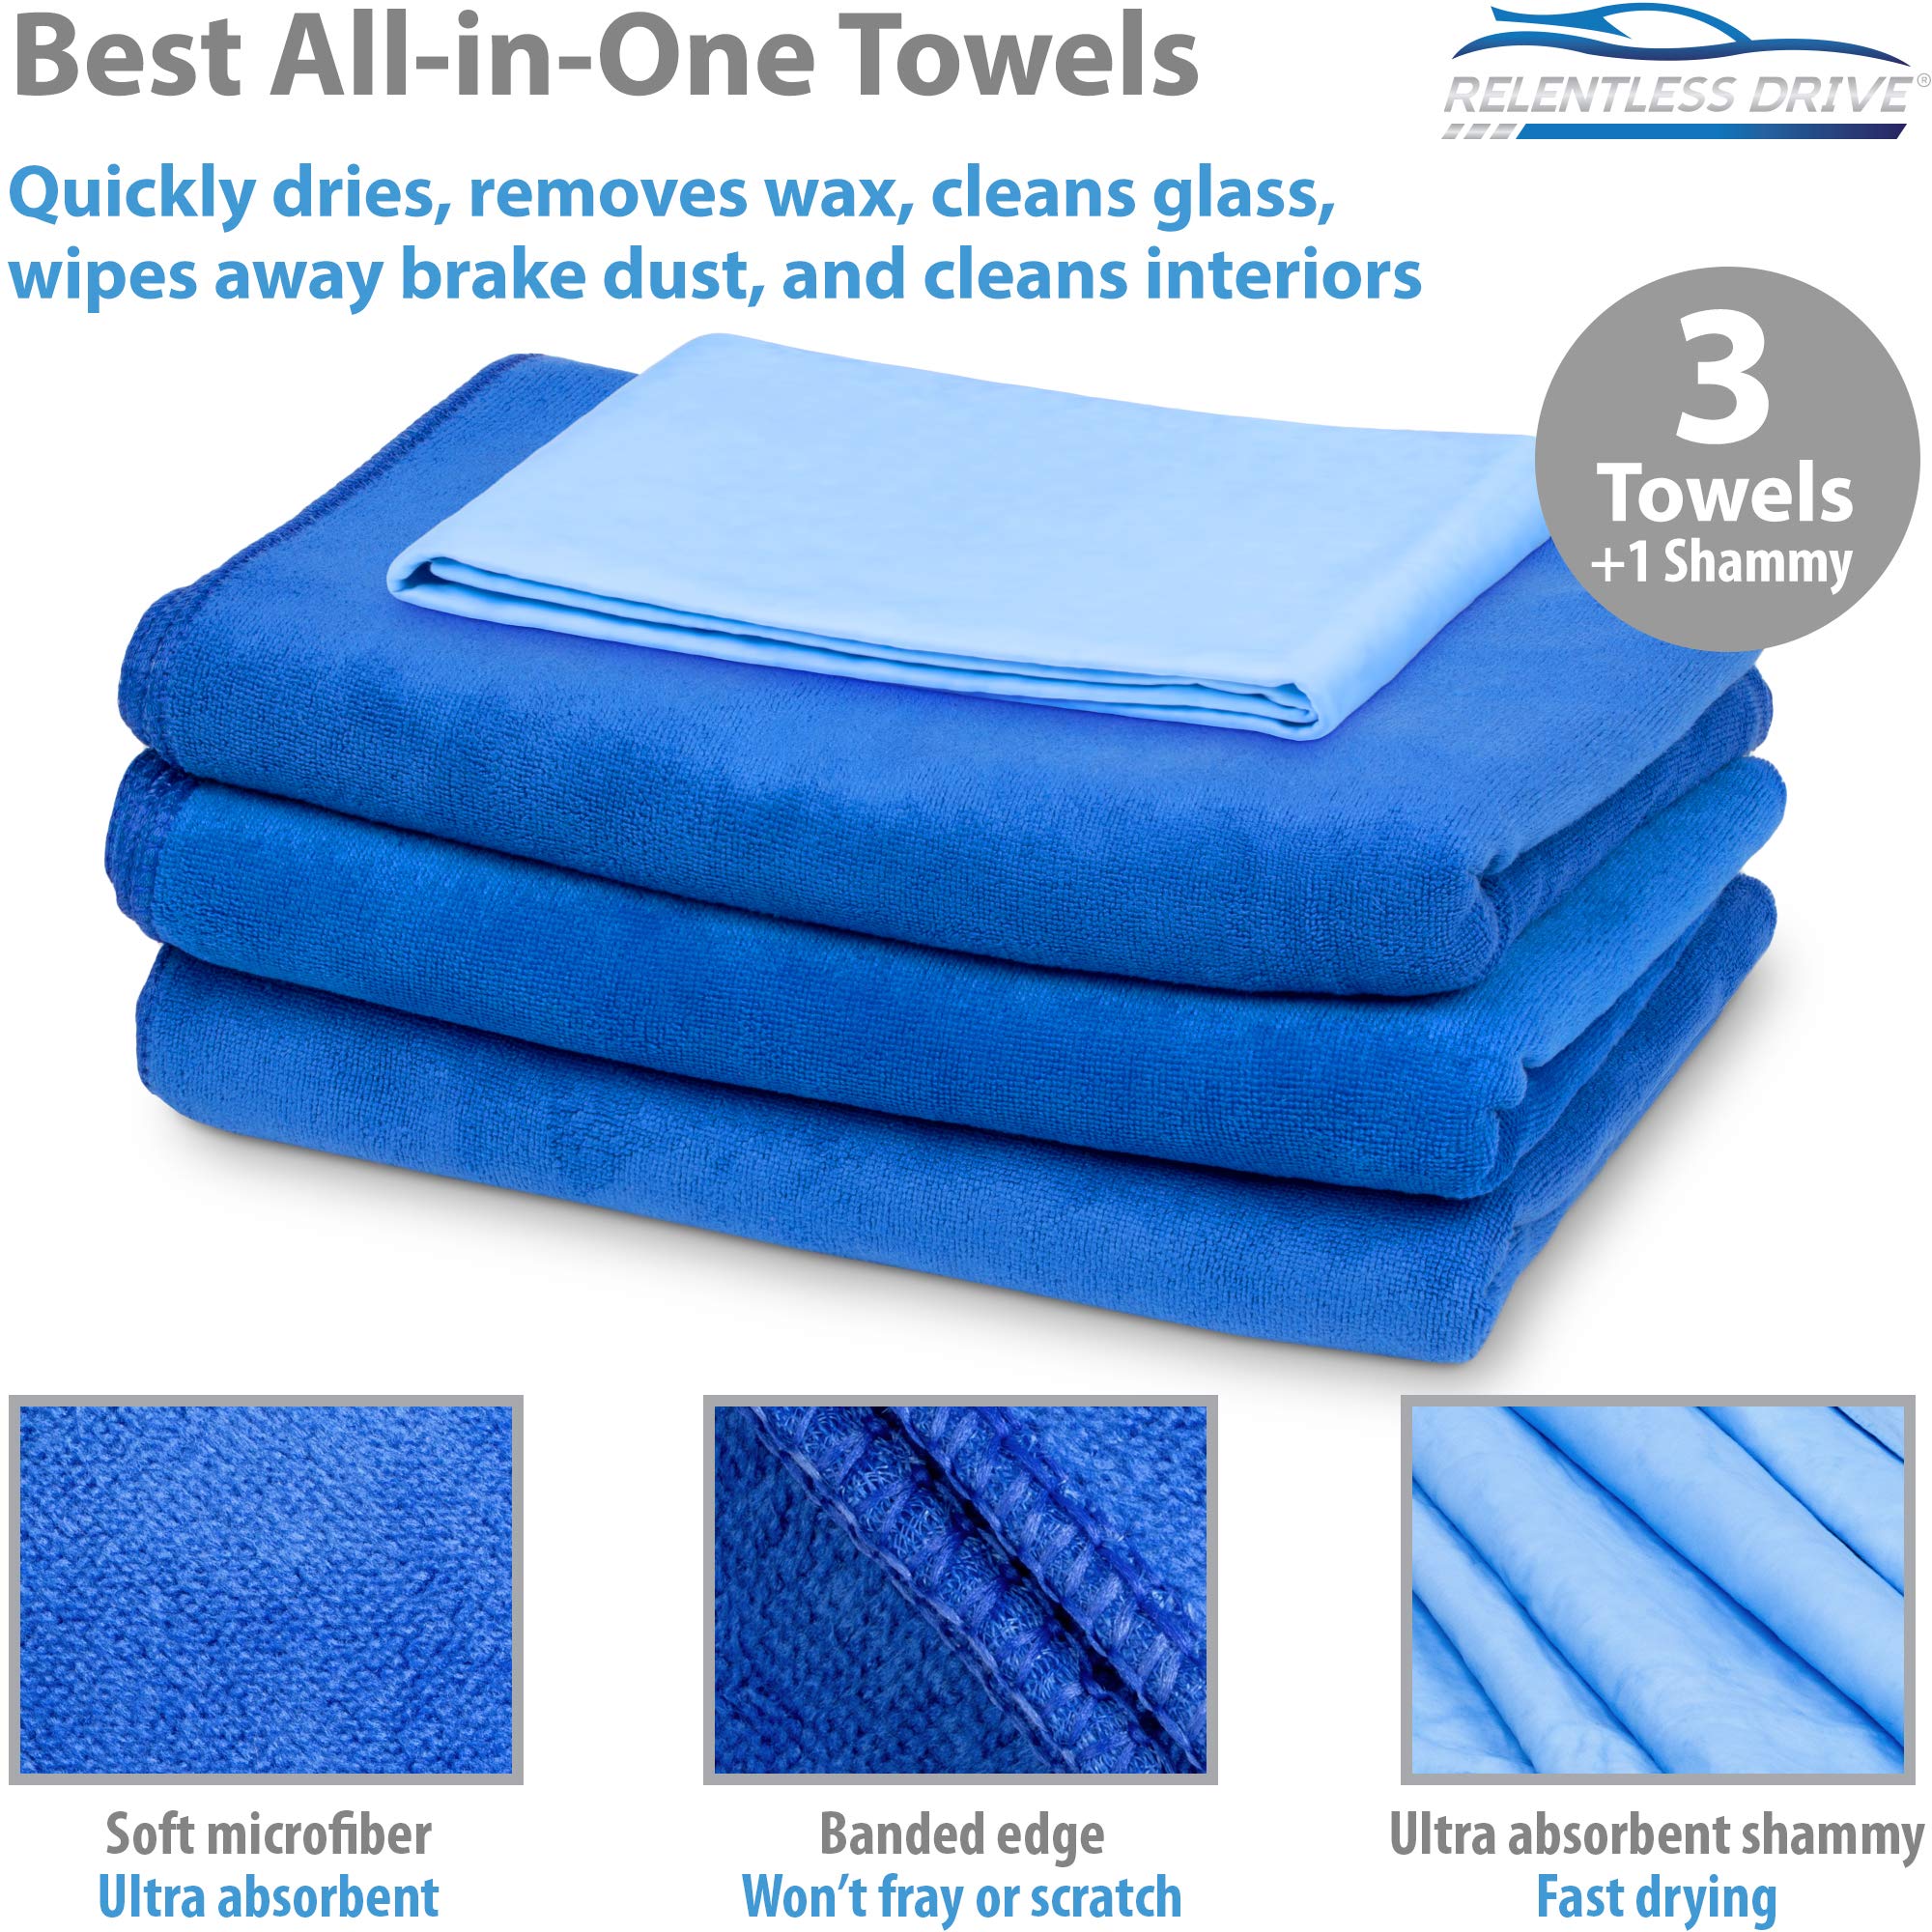 Extra large microfiber bath towel soft, super absorbent, quick